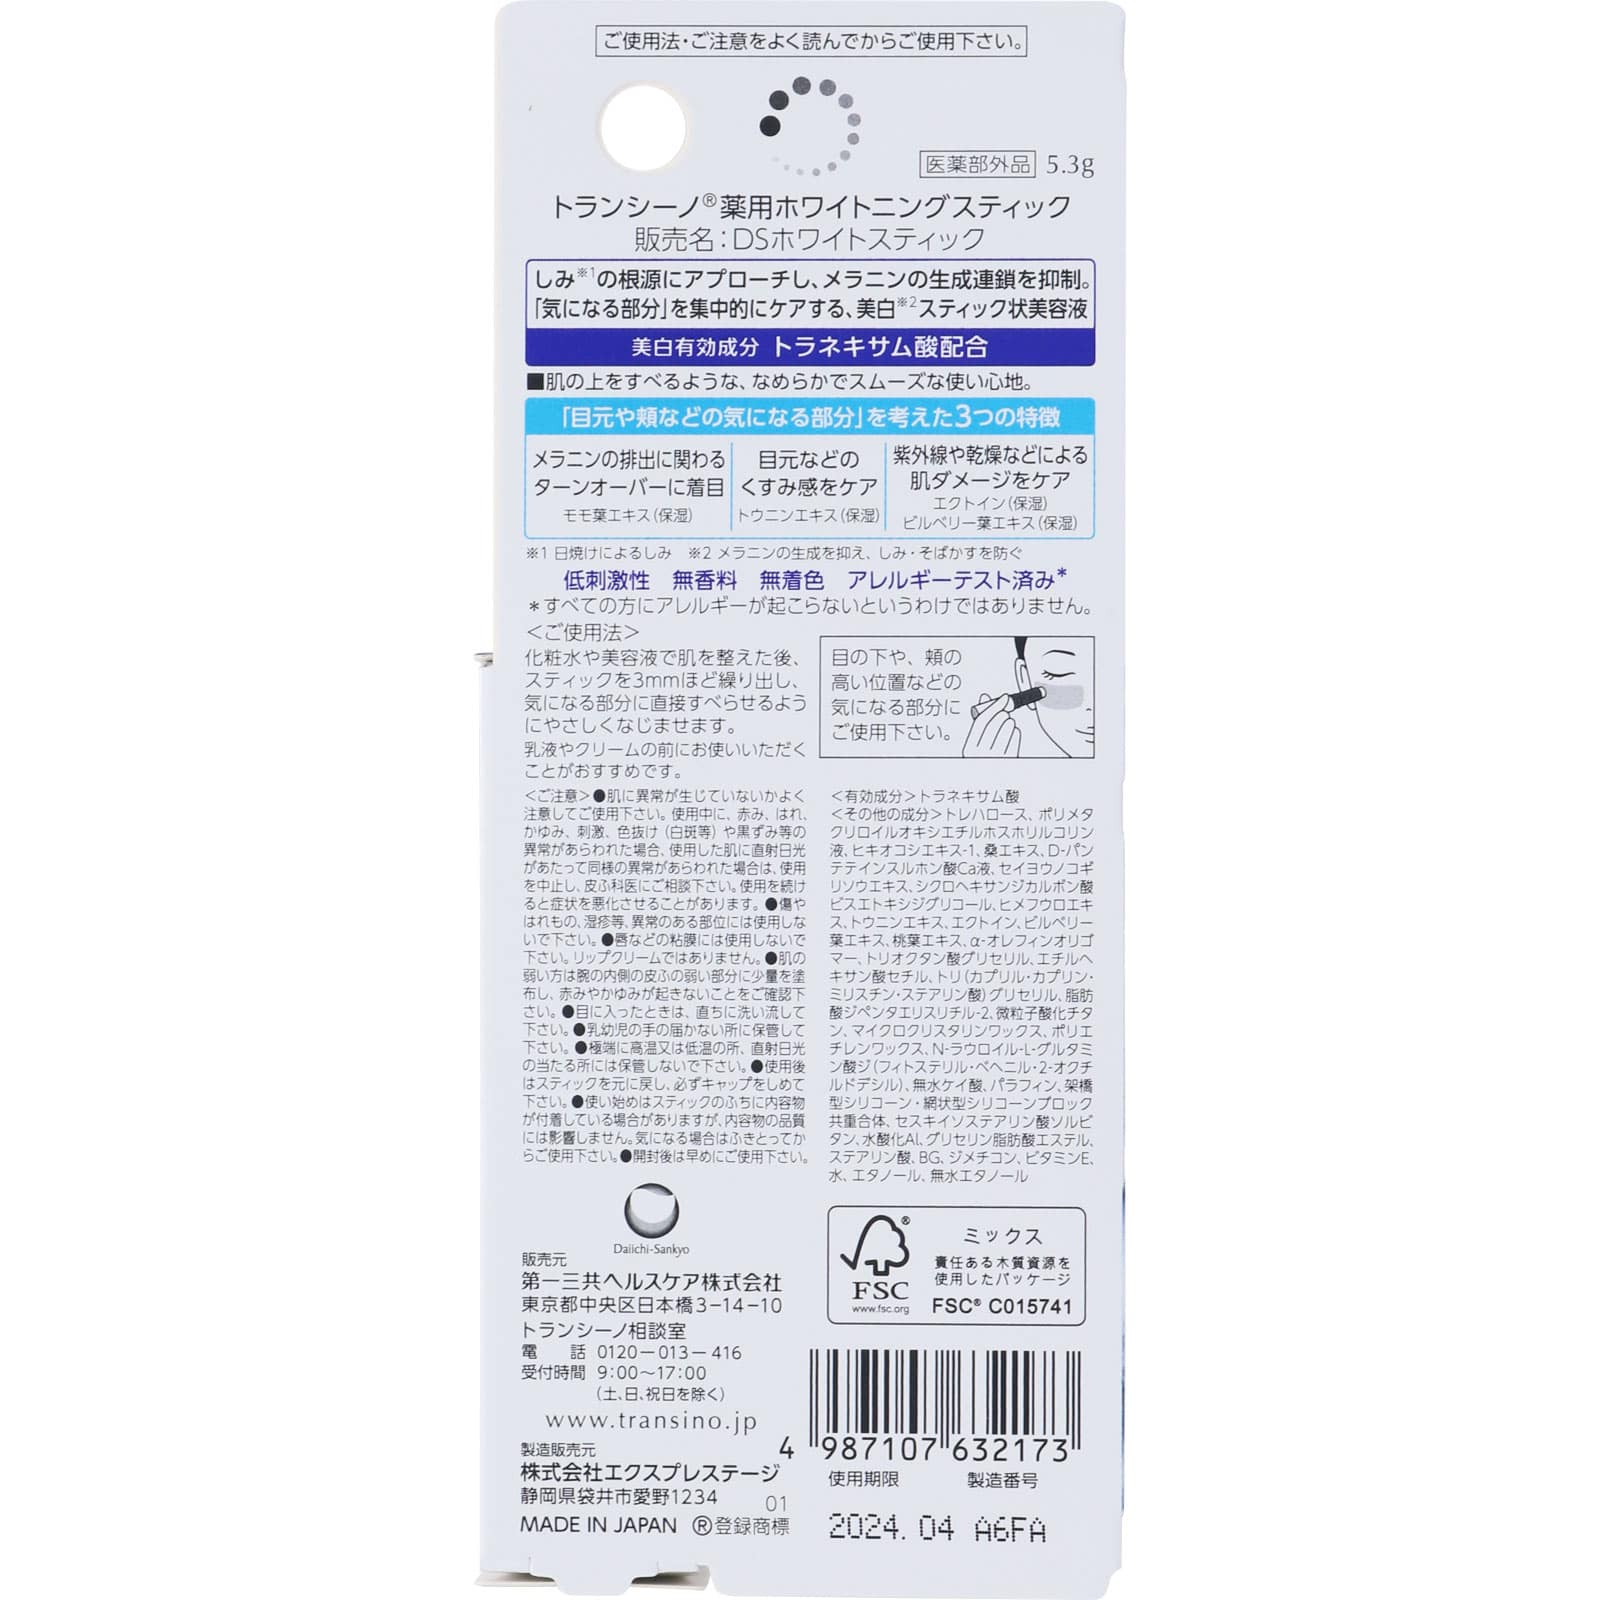 SALE】 トランシーノ 薬用ホワイトニングスティック 5.3g ×3個セット fucoa.cl